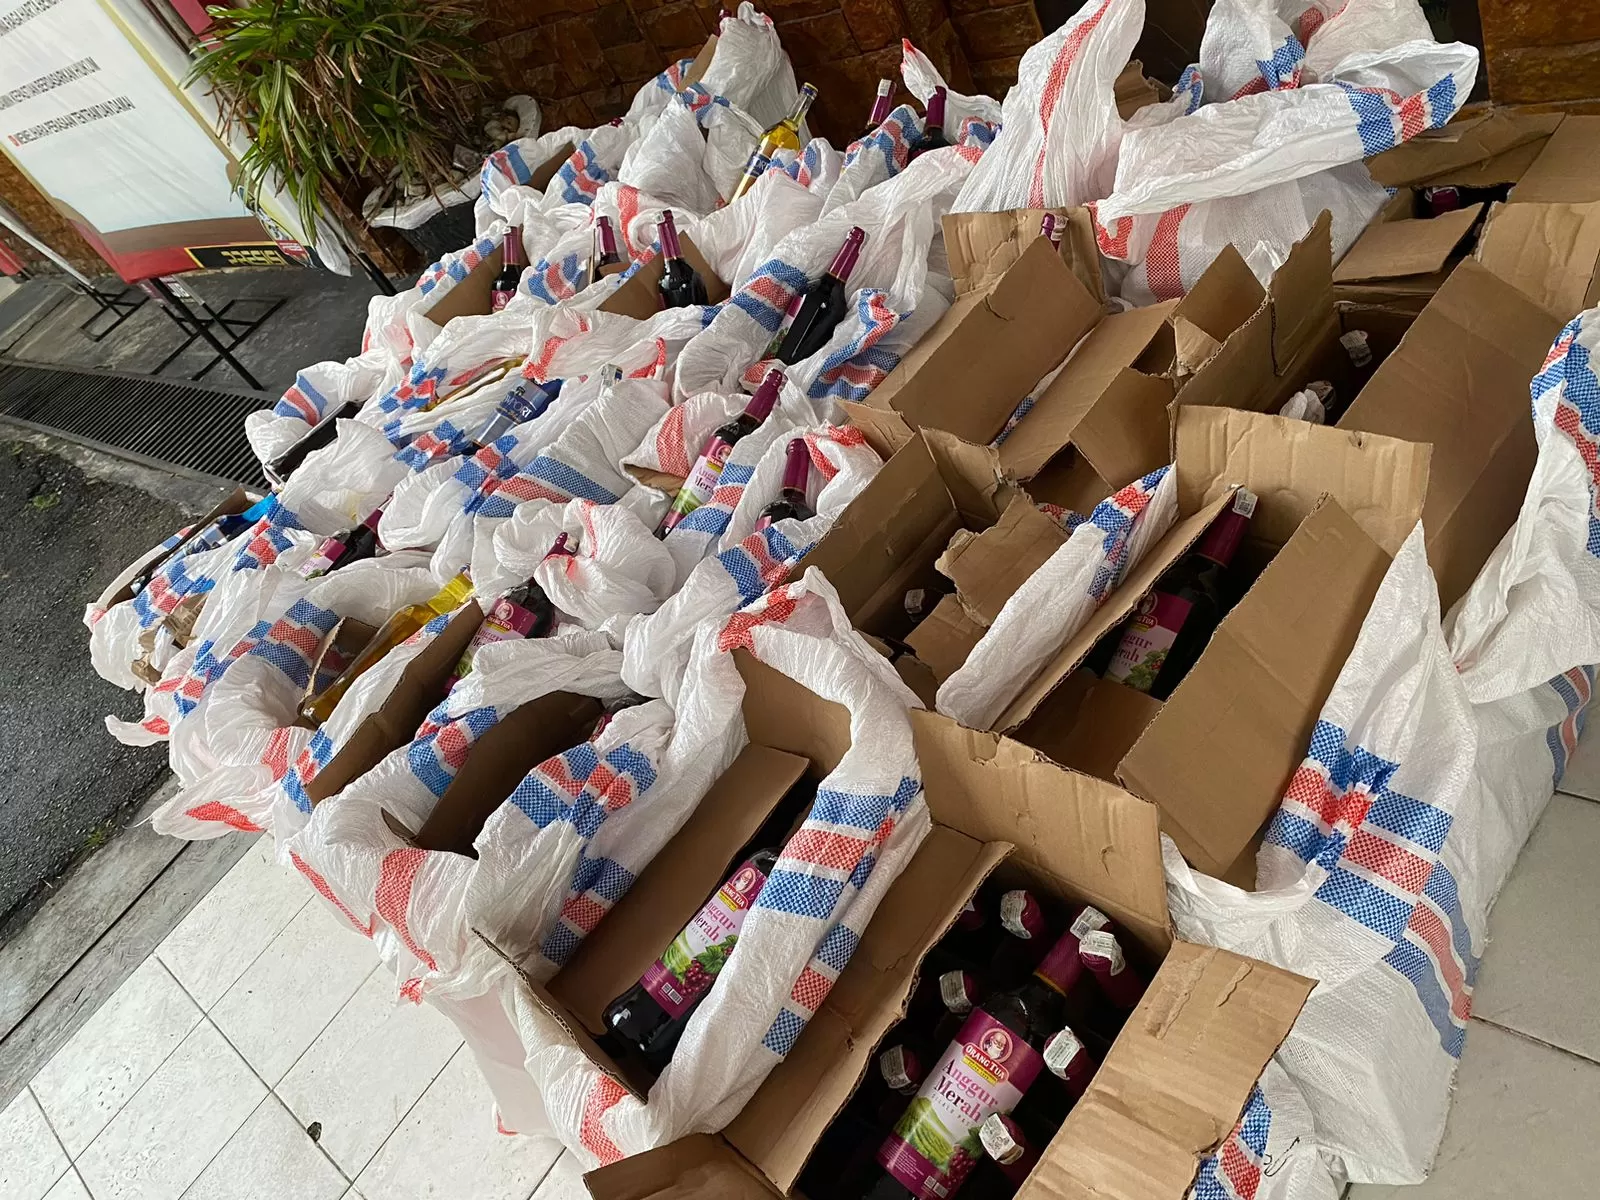 Ratusan dus minuman keras diamankan Polres Kerinci dari sebuah gudang di Desa Pelayang Raya, Kota Sungai Penuh (Metrojambi.com/Dedi Aguspriadi)